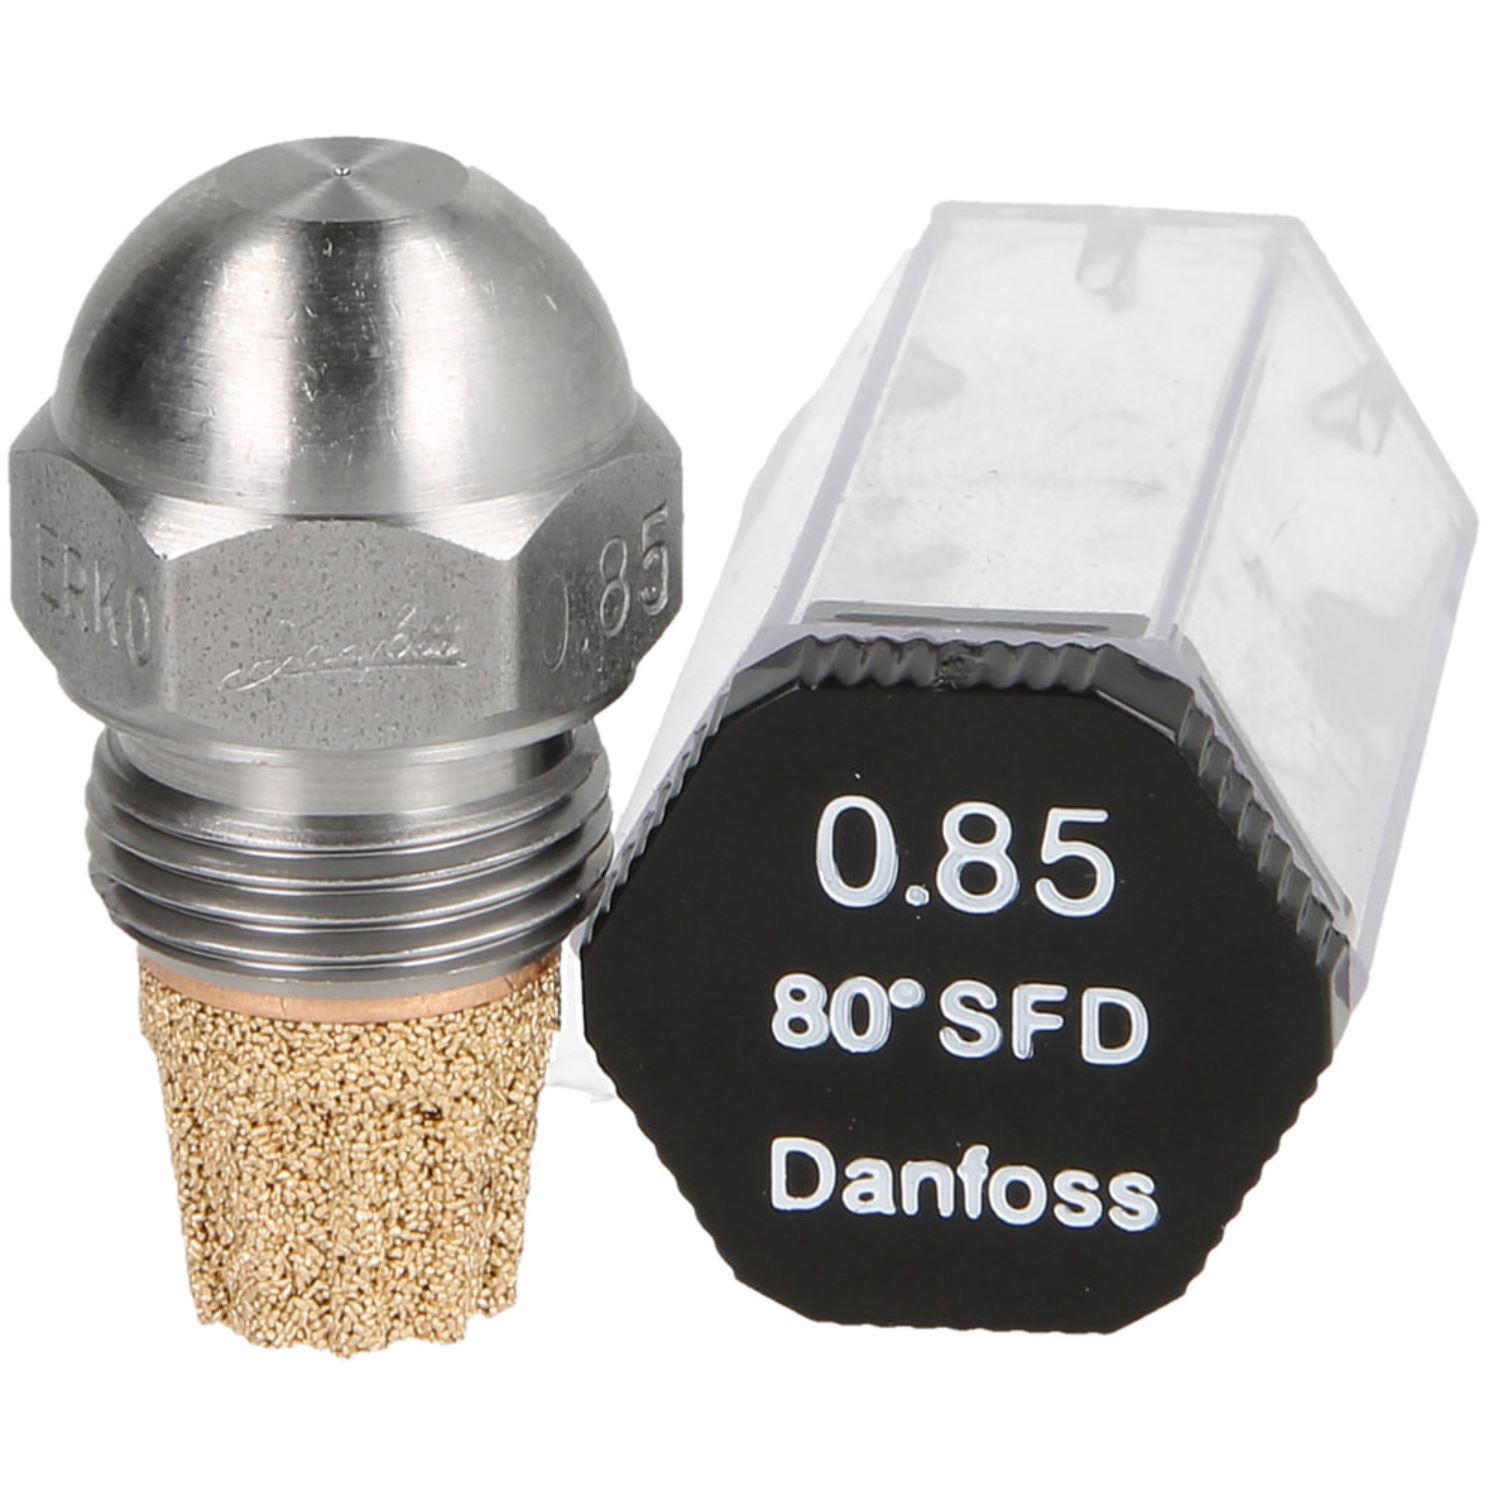 Danfoss-Öldüse 0,85 80°SF-D